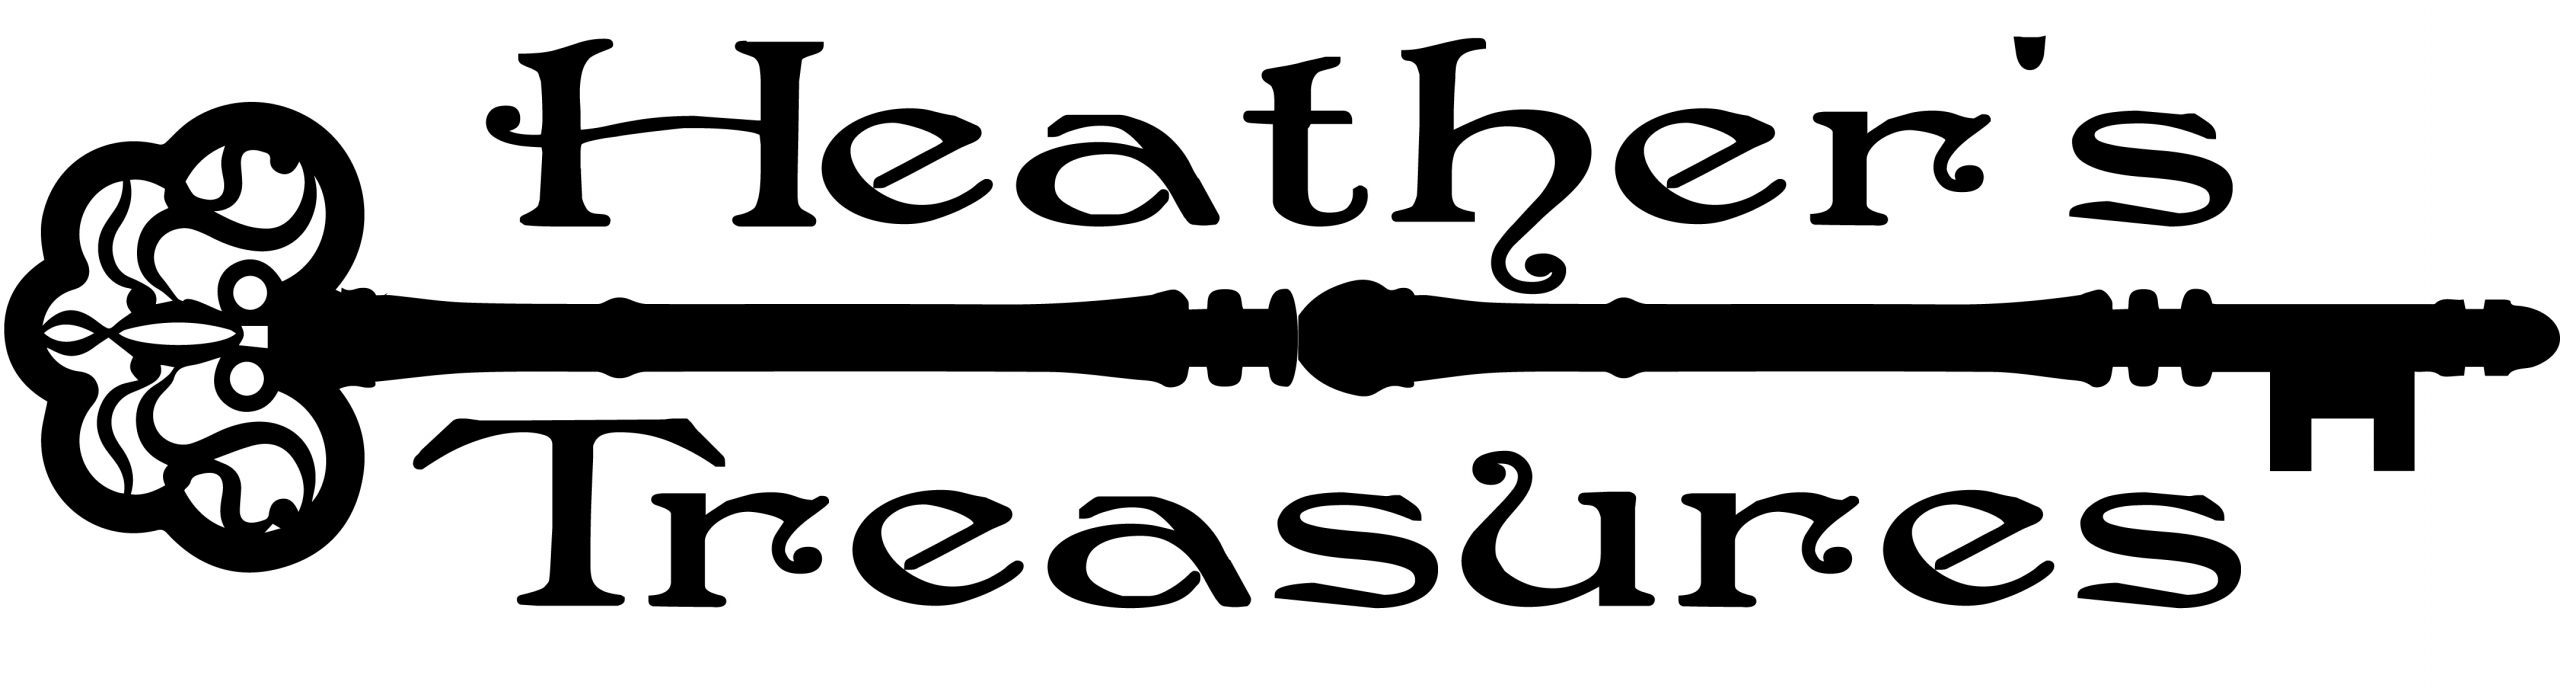 Heather's Treasures logo